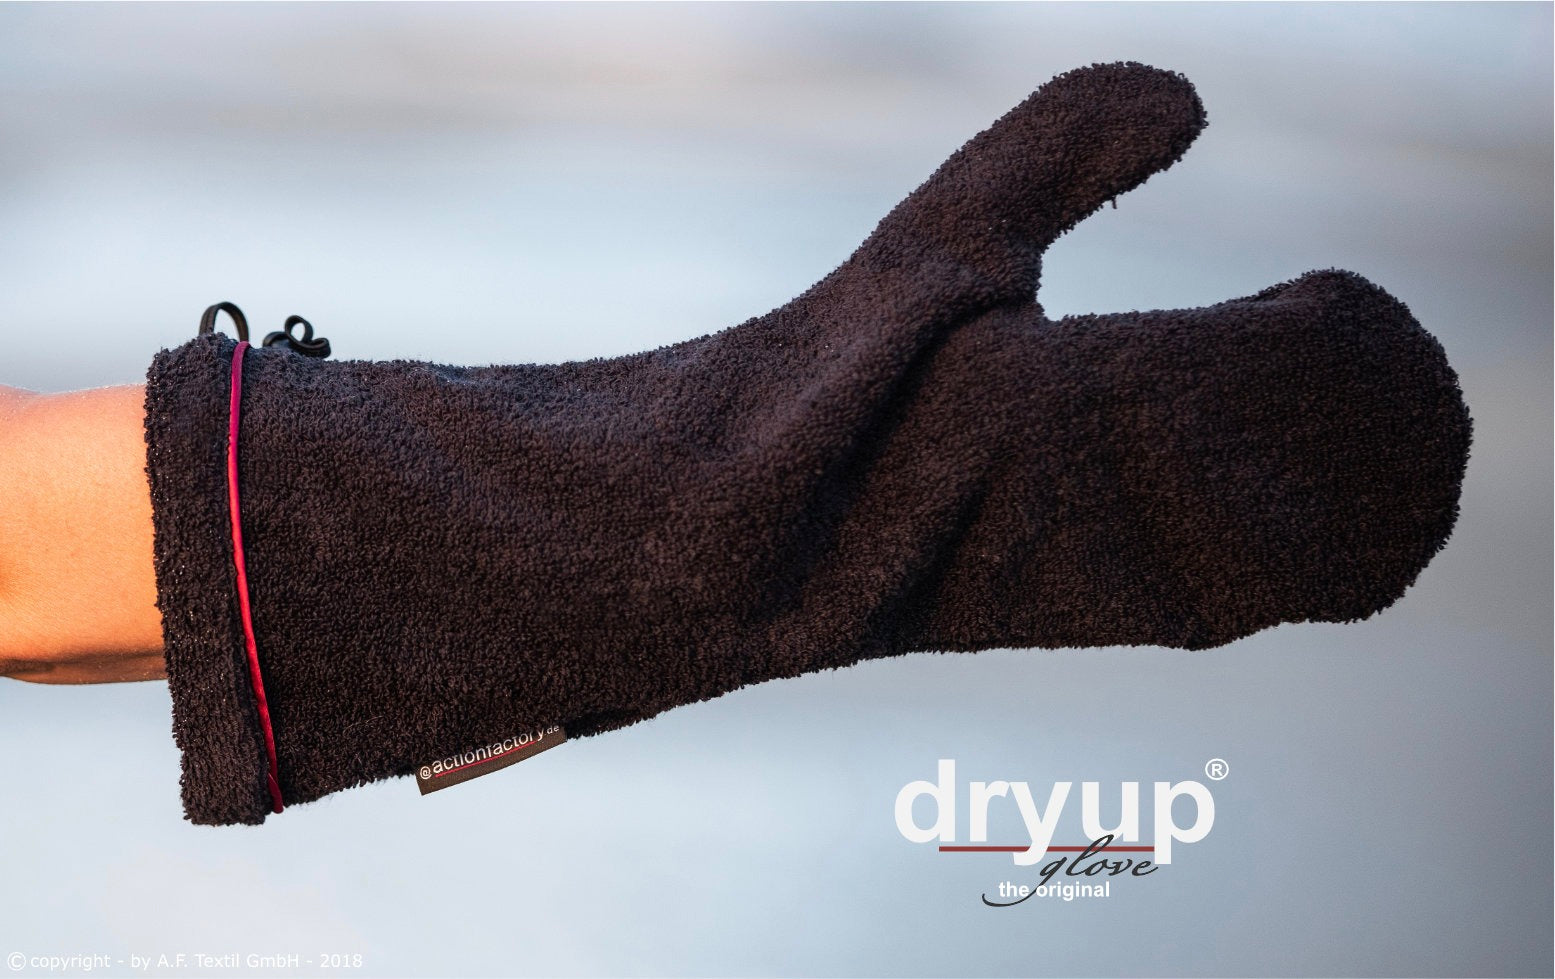 Dryup Glove 2